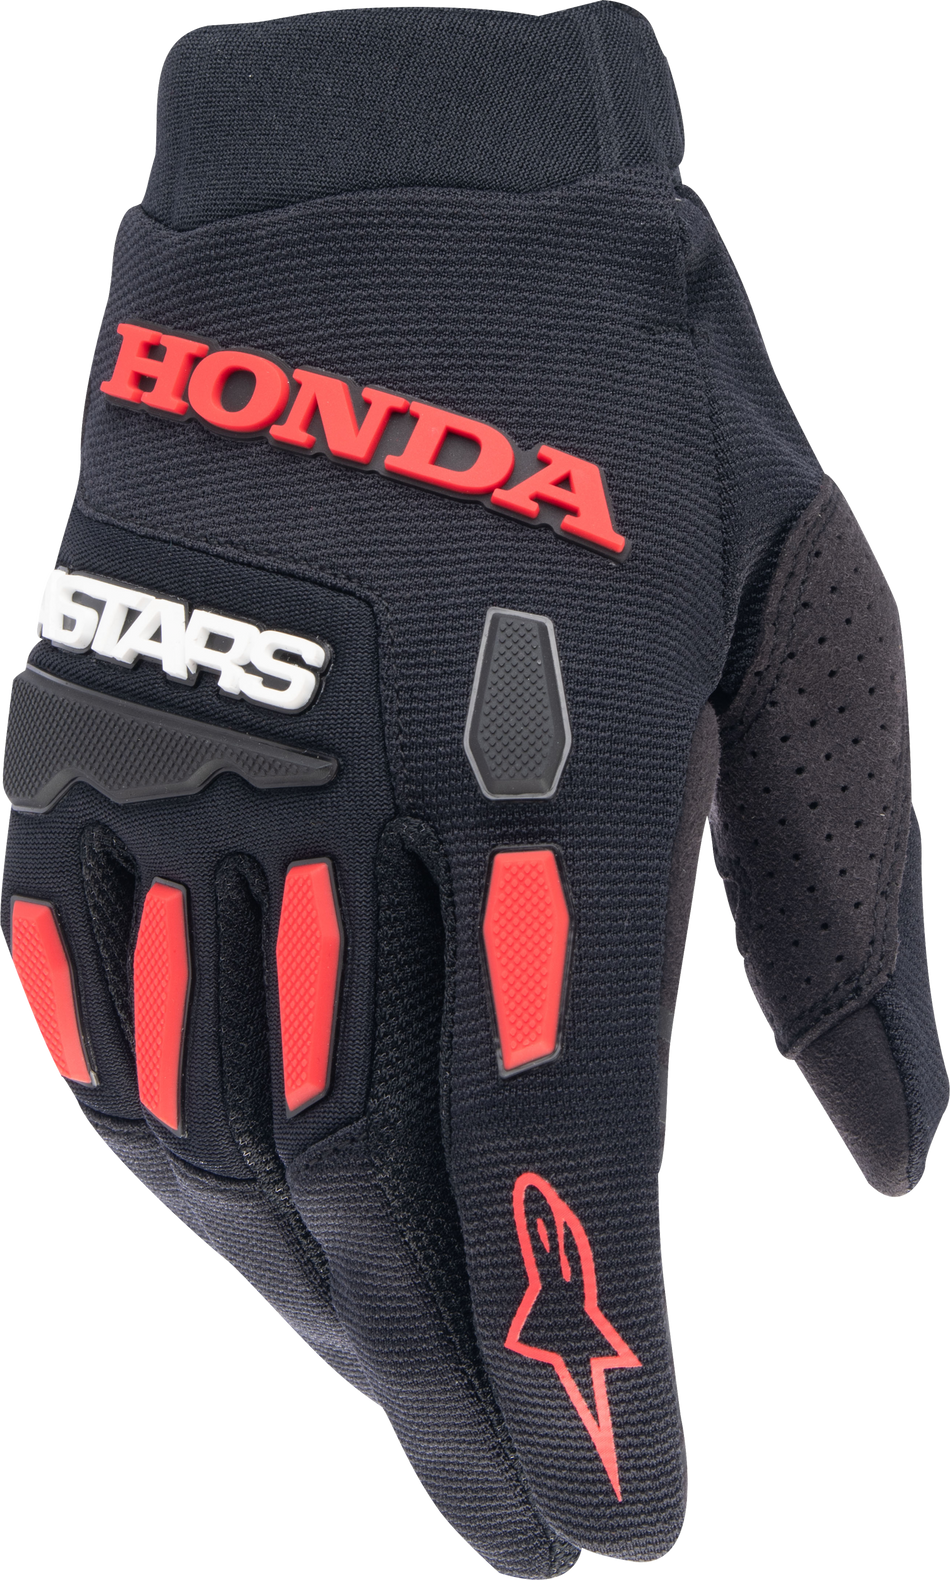 ALPINESTARS Honda Full Bore Gloves Black/Bright Red Md 3563823-1303-M